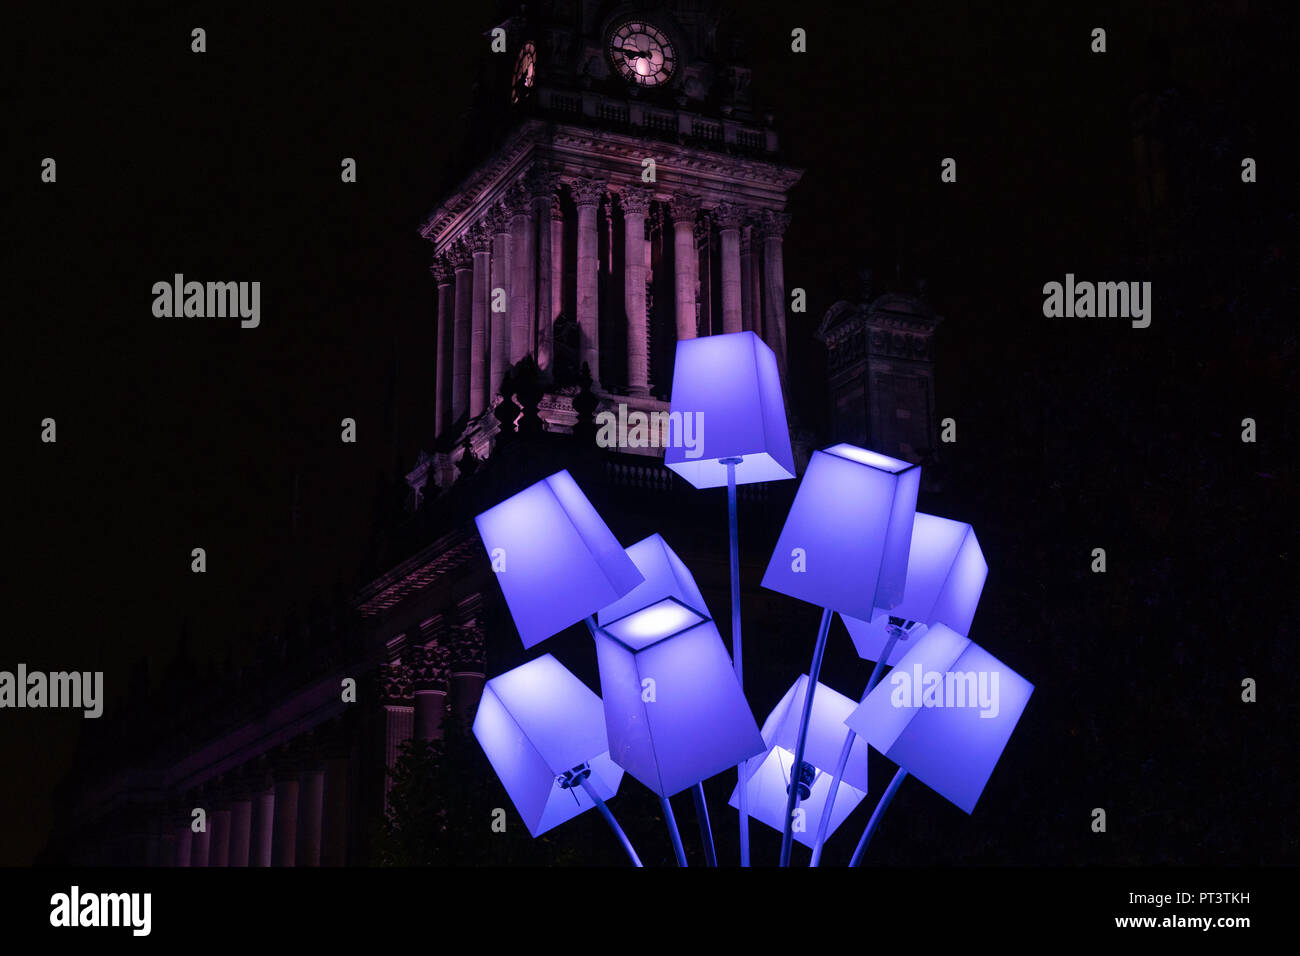 Lampes décoratives bleues avec l'hôtel de ville de Leeds en arrière-plan à Leeds Light Night, West Yorkshire, Angleterre, Royaume-Uni. Banque D'Images